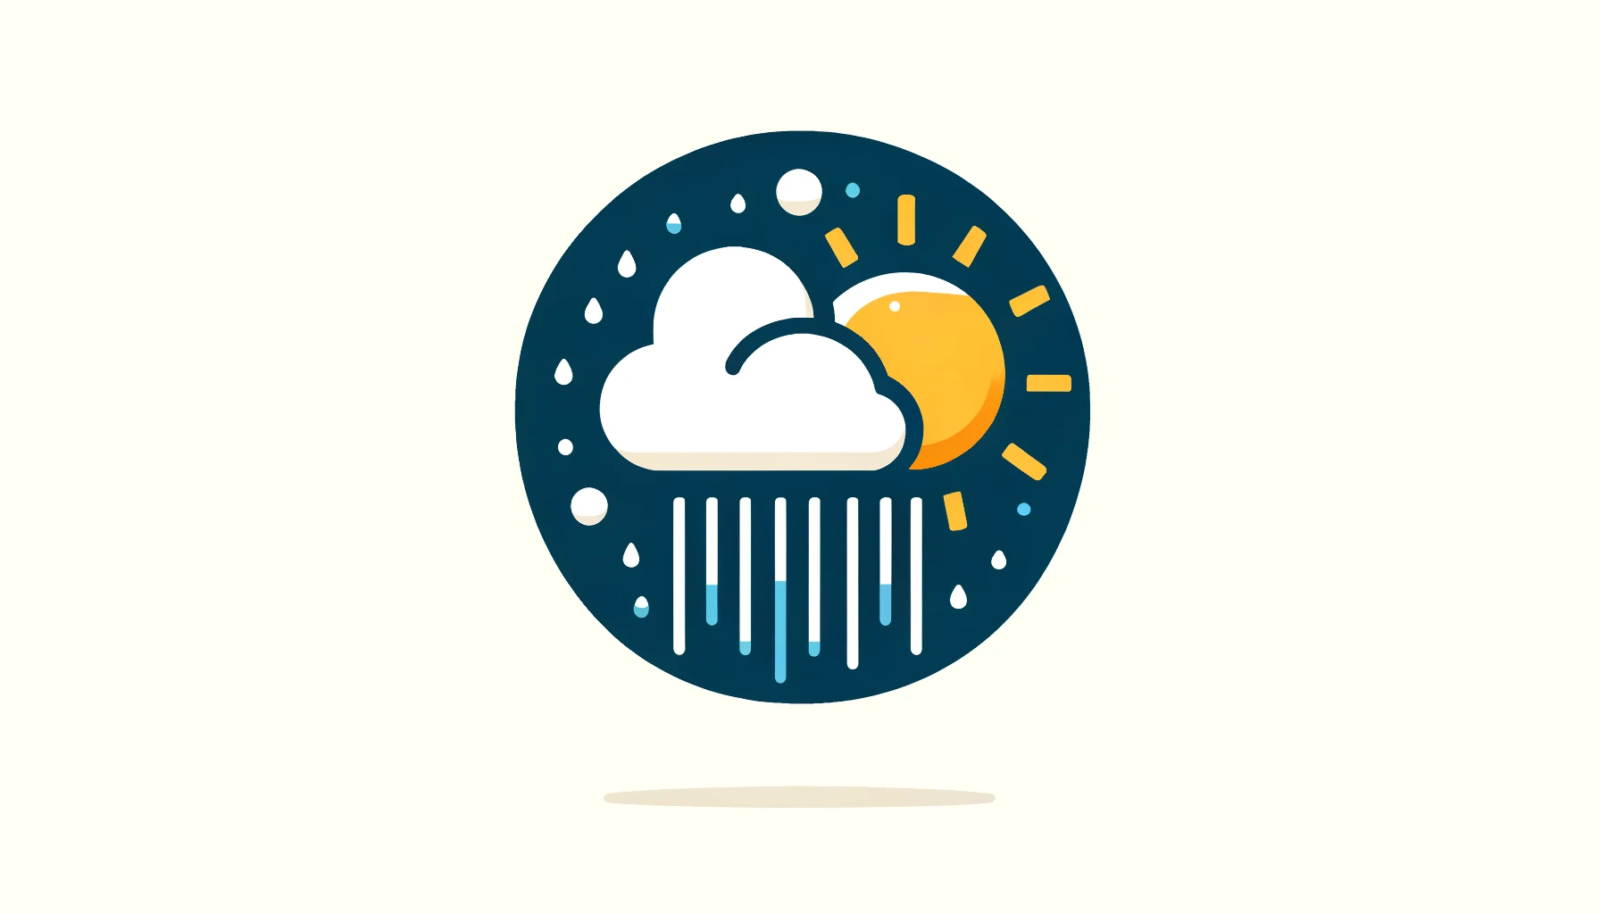 Símbolo de clima variable con nubes, lluvia ligera y sol.